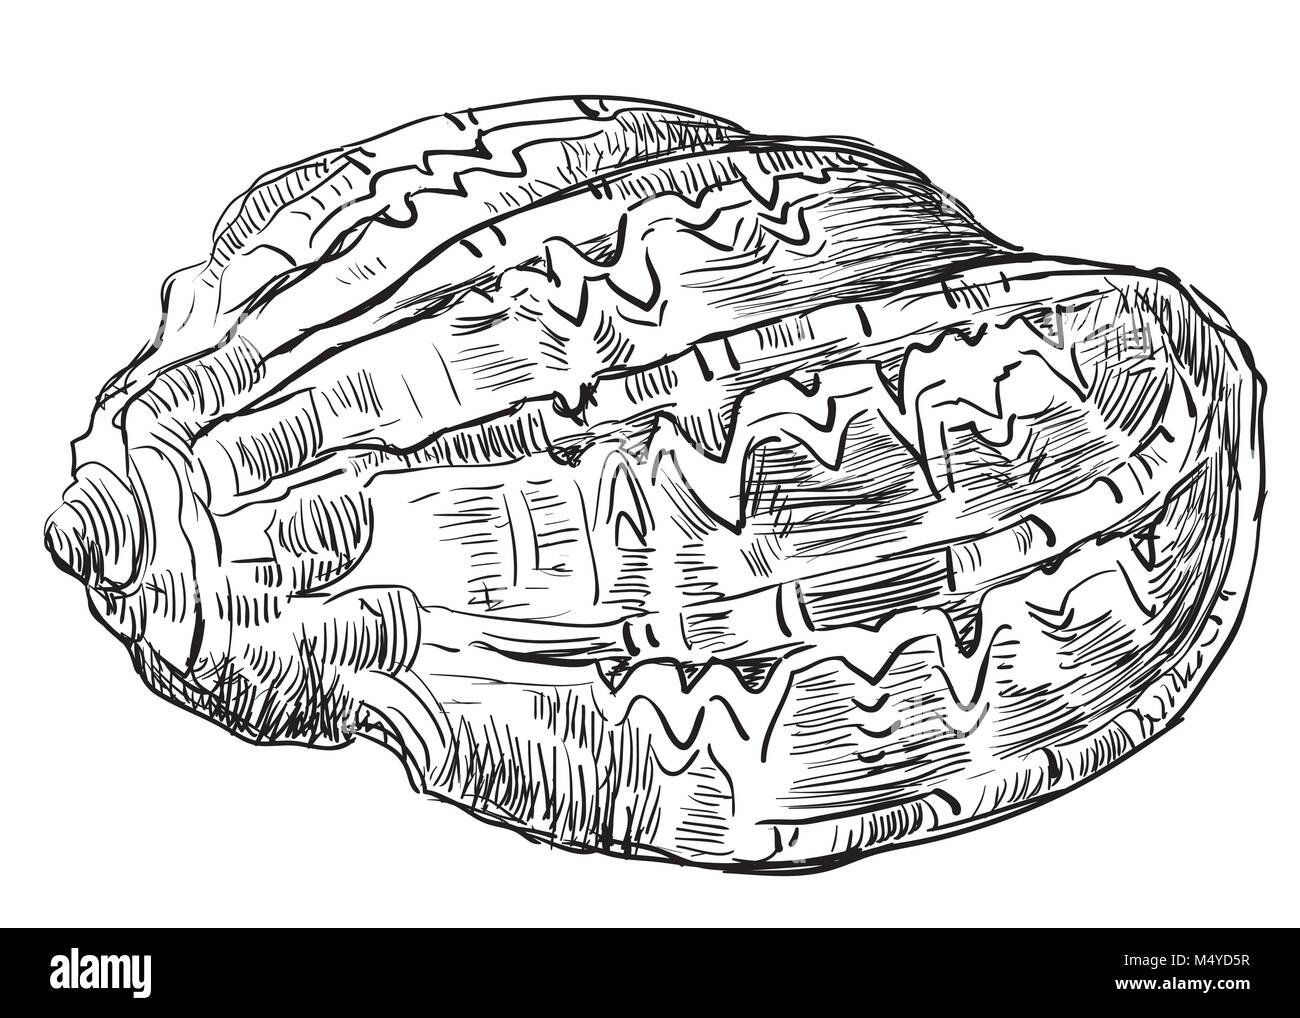 Hand Zeichnung Skizze der Muschel. Vektor monochromen Abbildung: seashell auf weißem Hintergrund. Stock Vektor